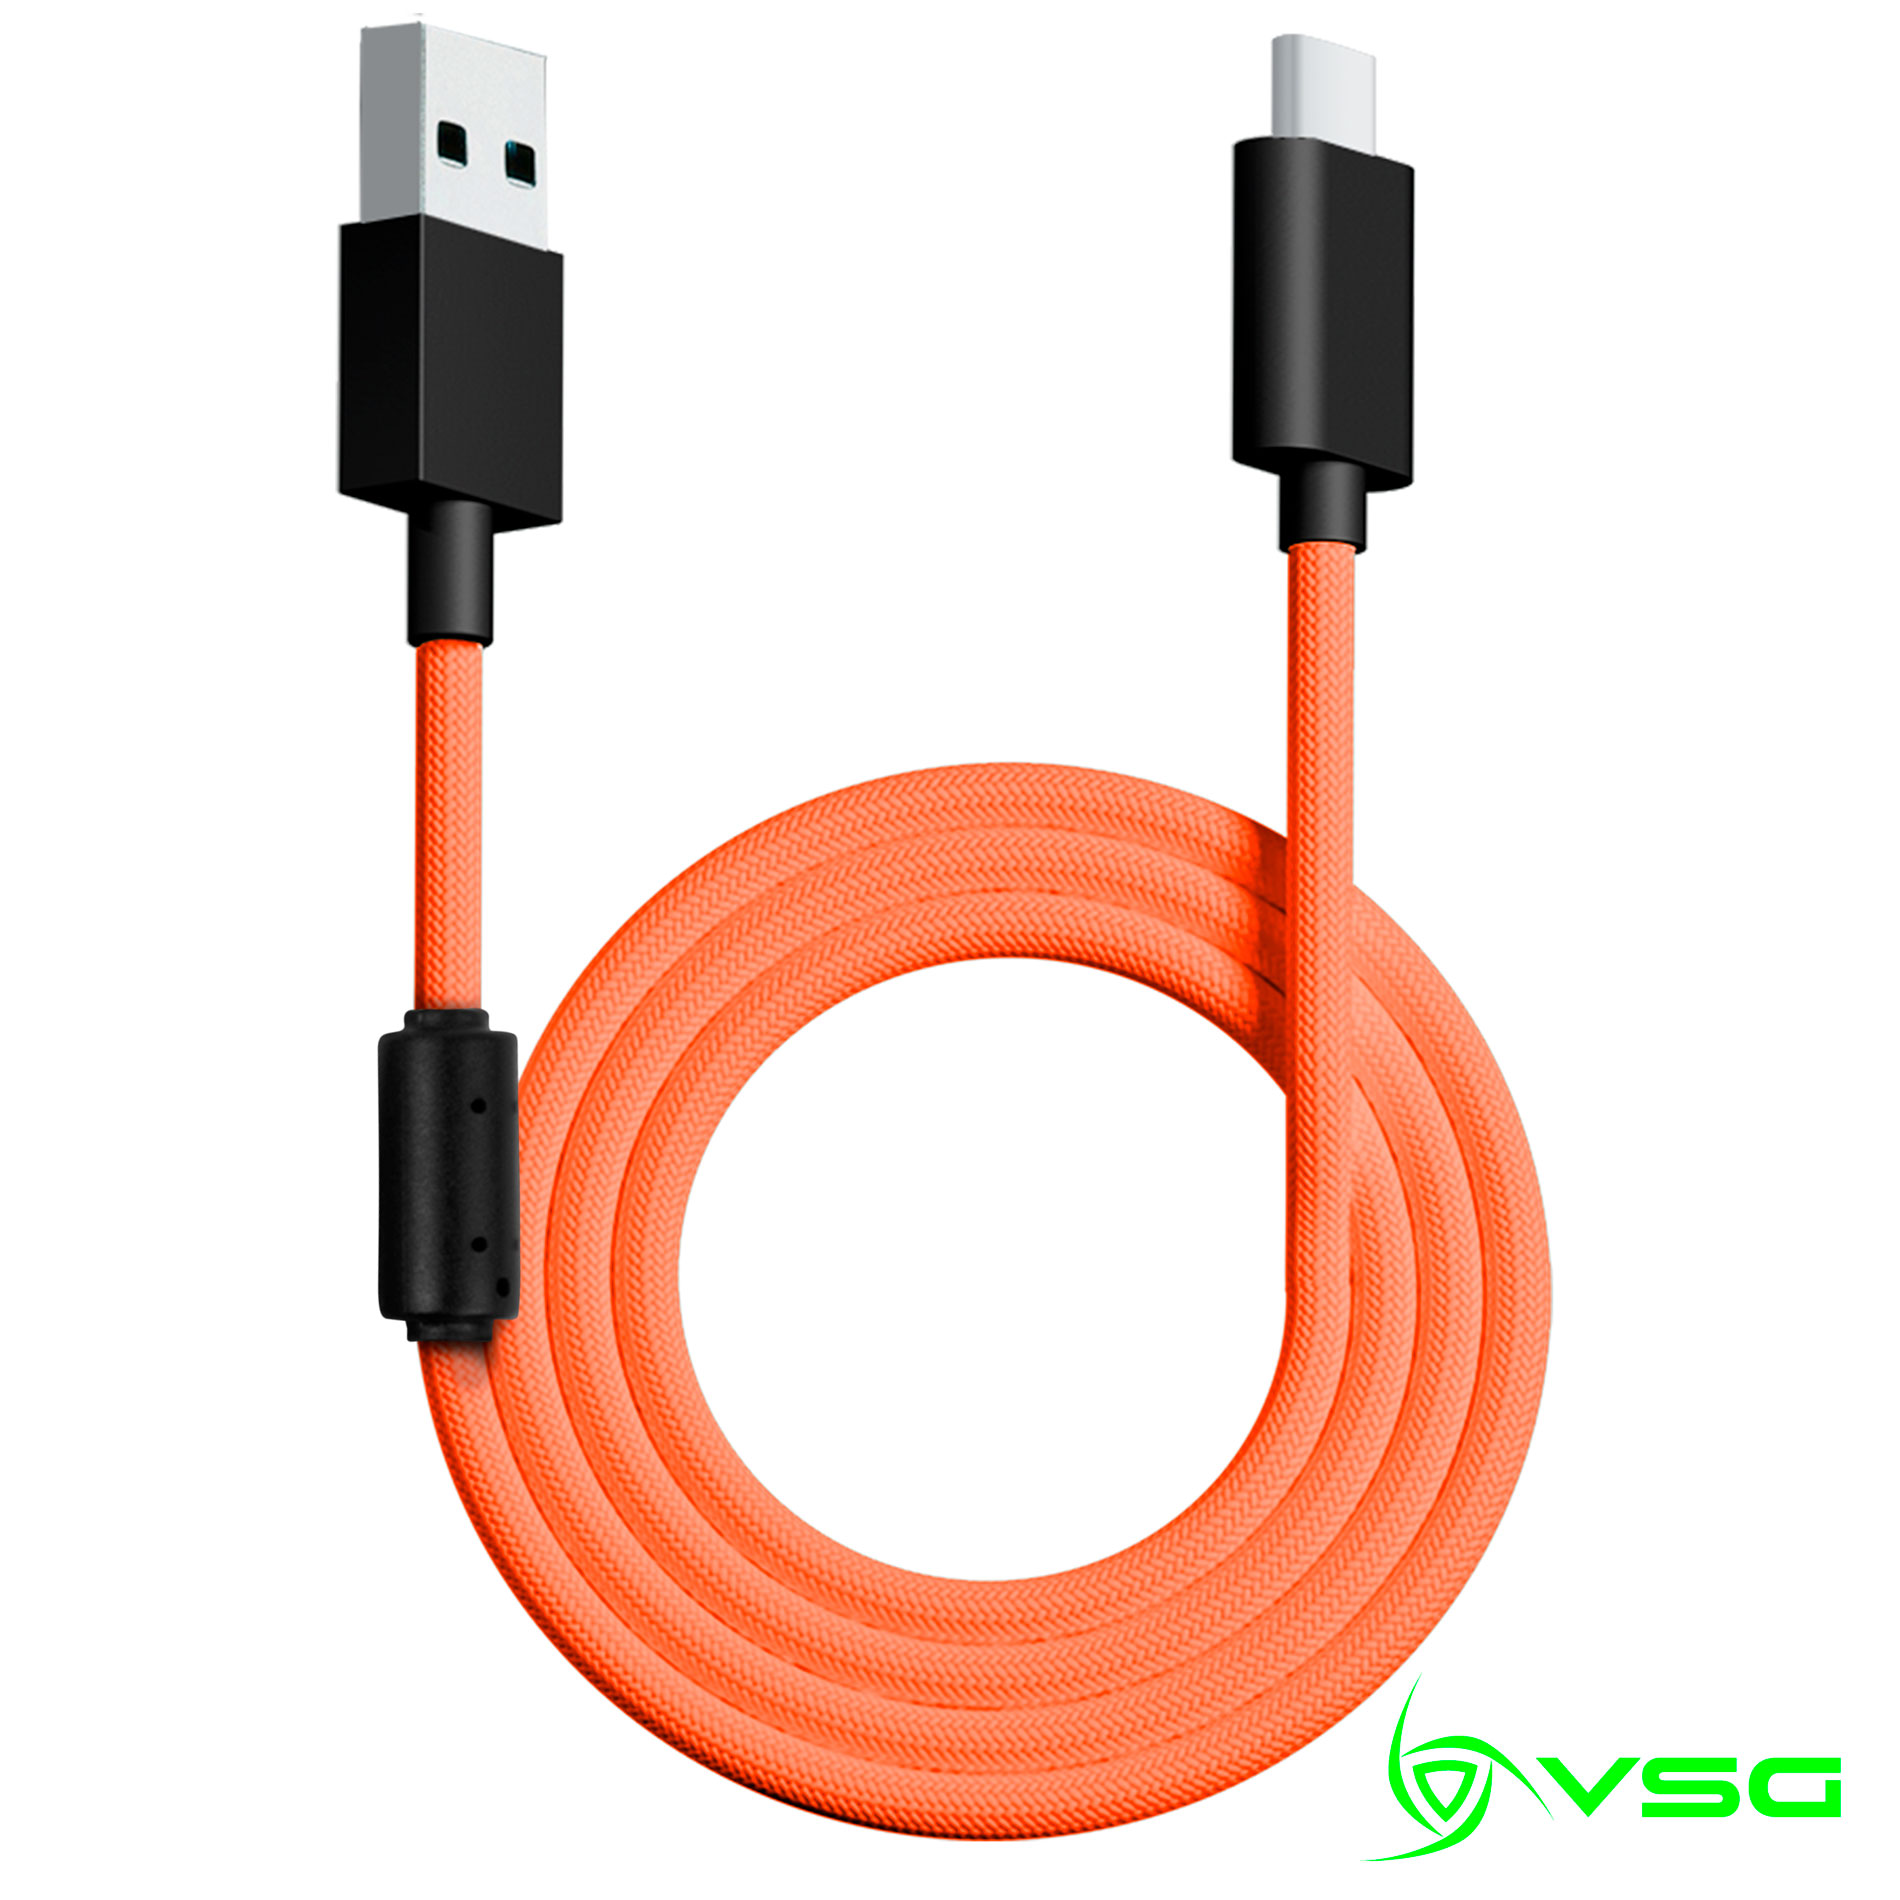 CABLE USB VSG TIPO C NARANJA - VG-CABLE-AQ- ORANGE / Precio: $119.00